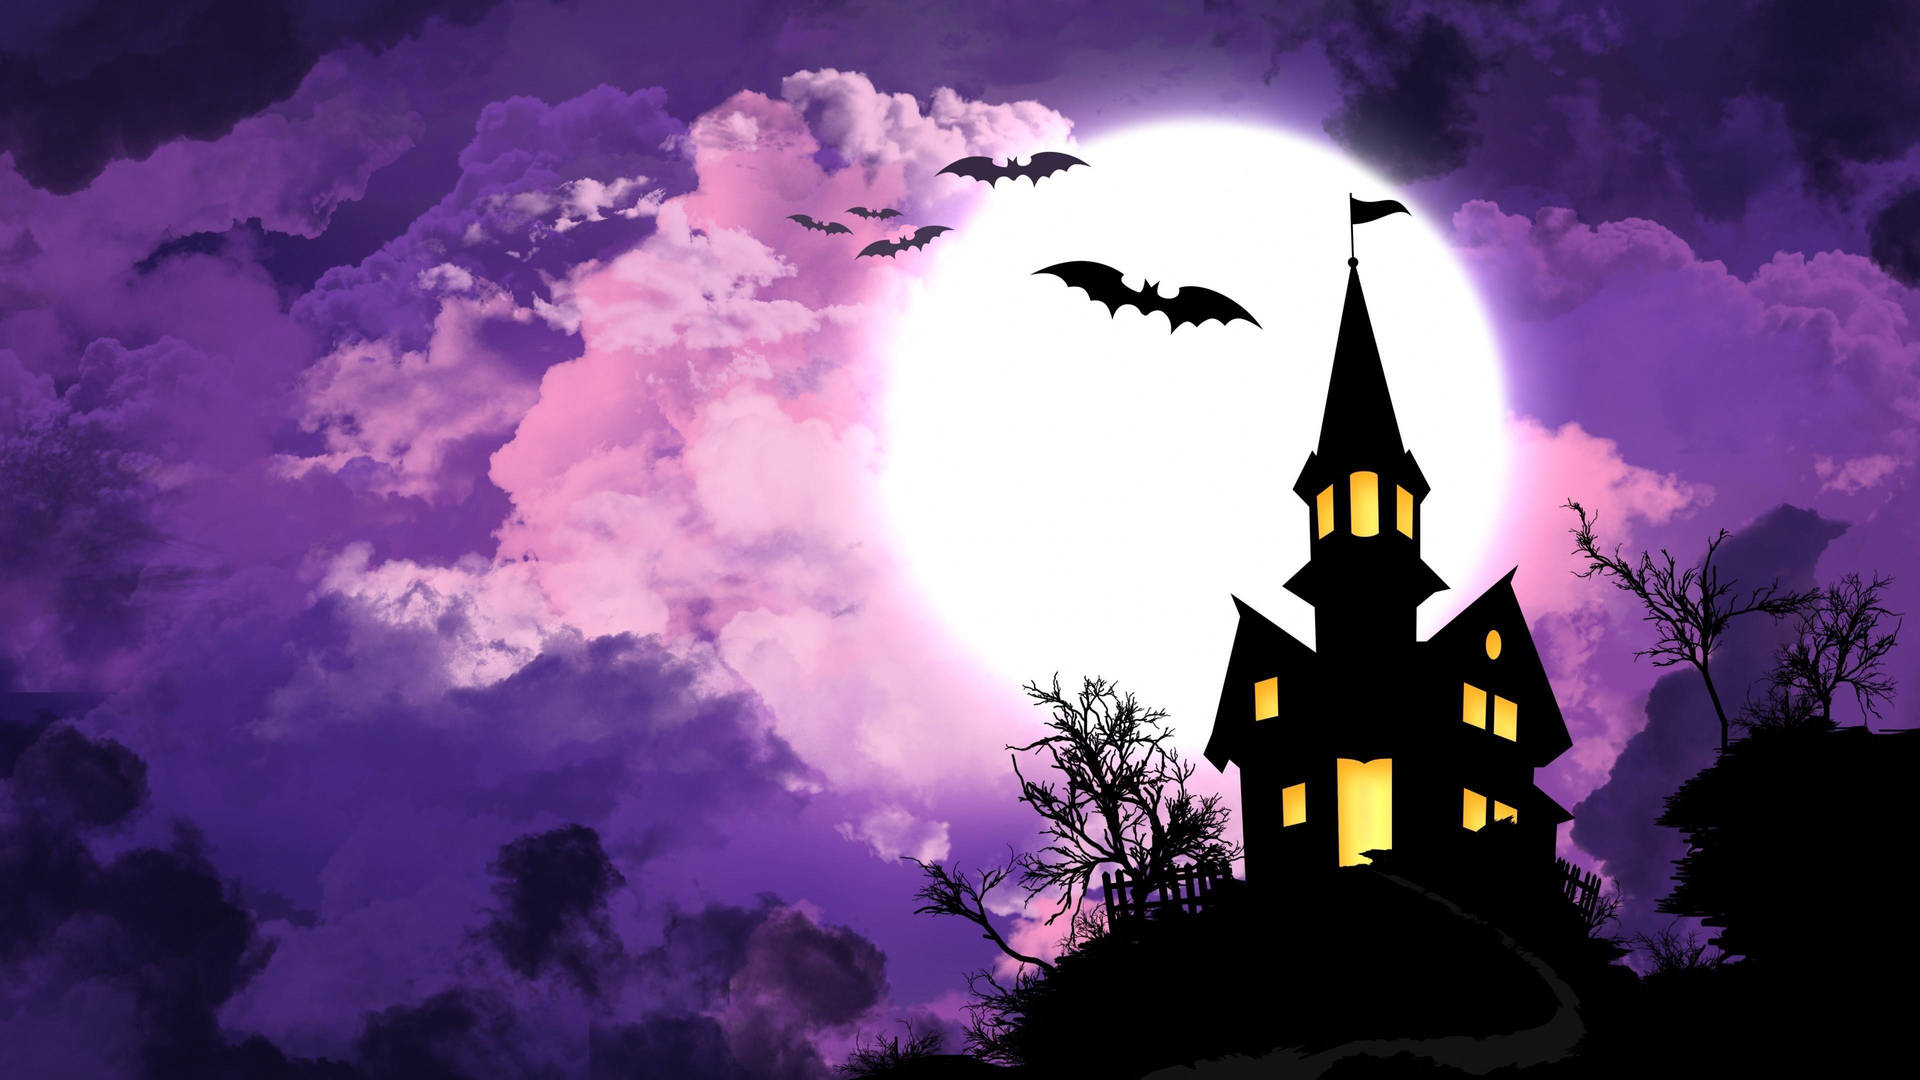 Laluna Proyecta Un Manto Fantasmal Sobre Una Casa Embrujada En La Noche De Halloween. Fondo de pantalla